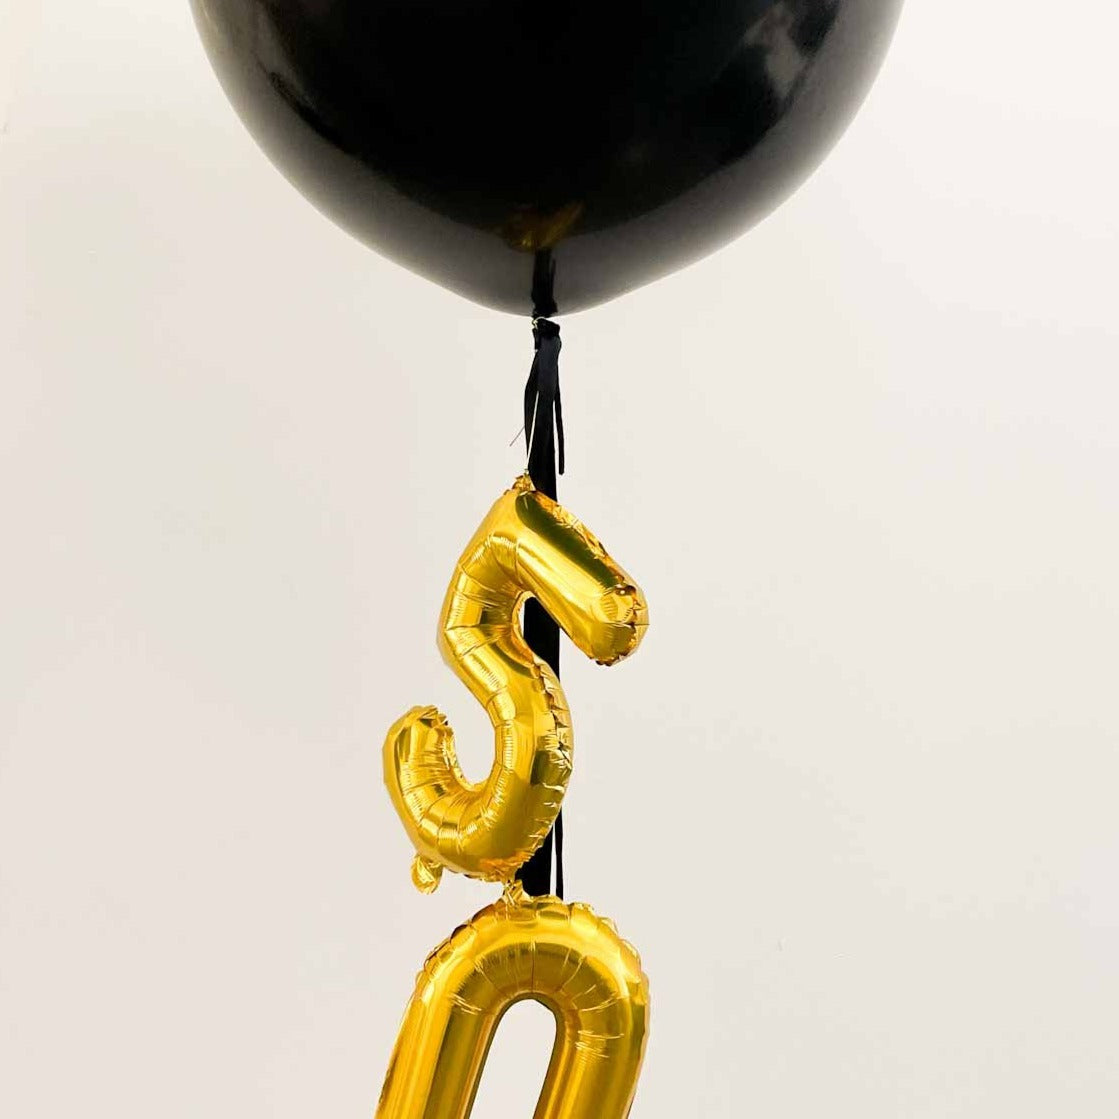 Balão L balão insuflado preto decorado com números de papel alumínio <br> (apenas Barcelona e Madrid)</br>